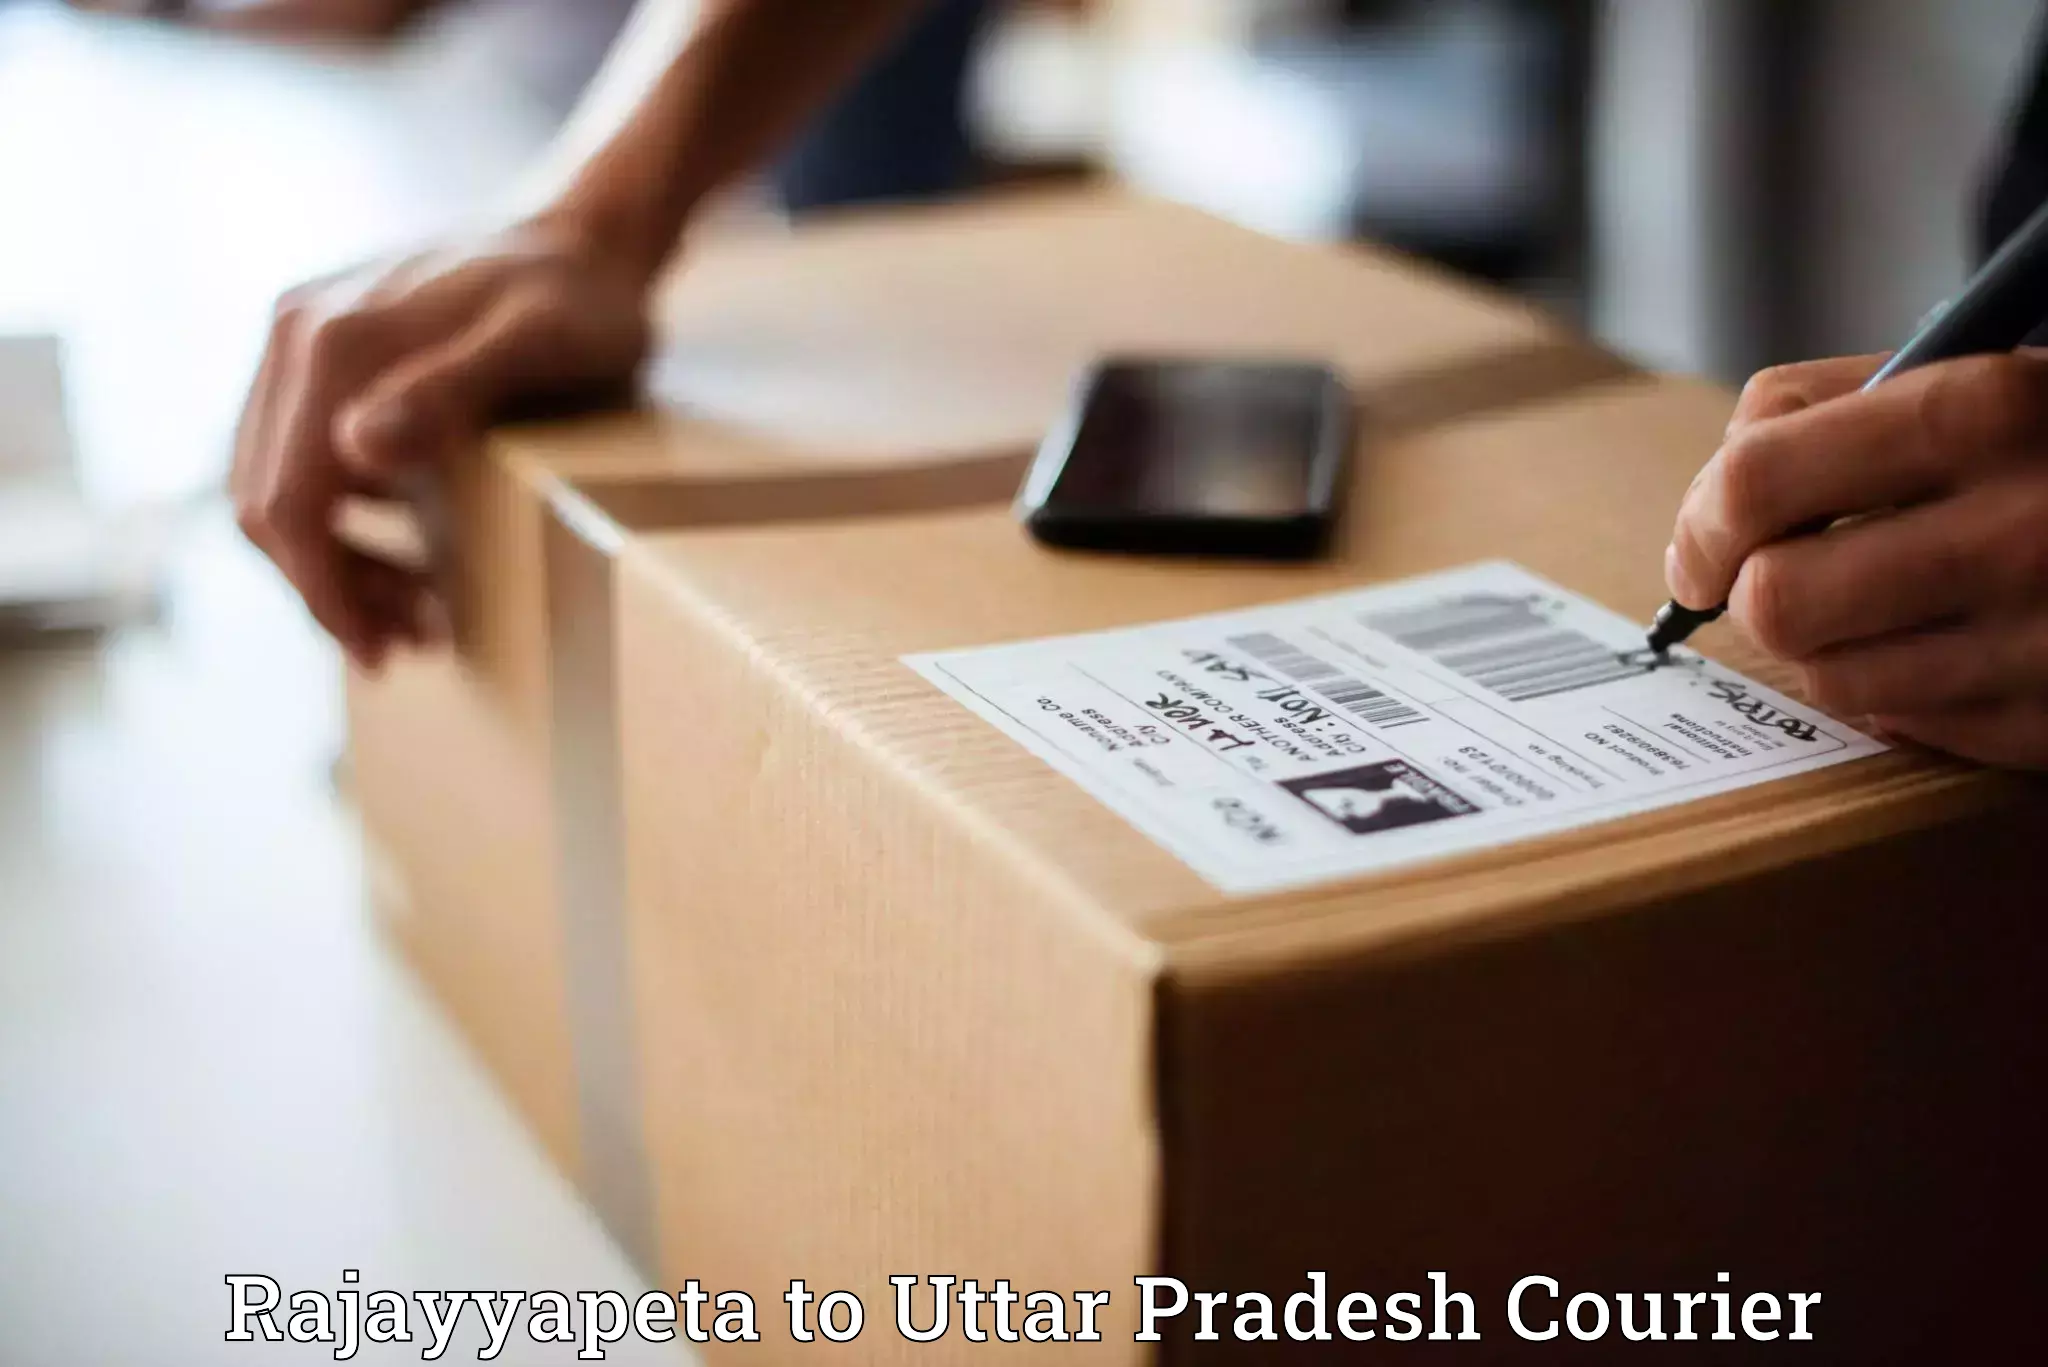 Reliable parcel services Rajayyapeta to Agra